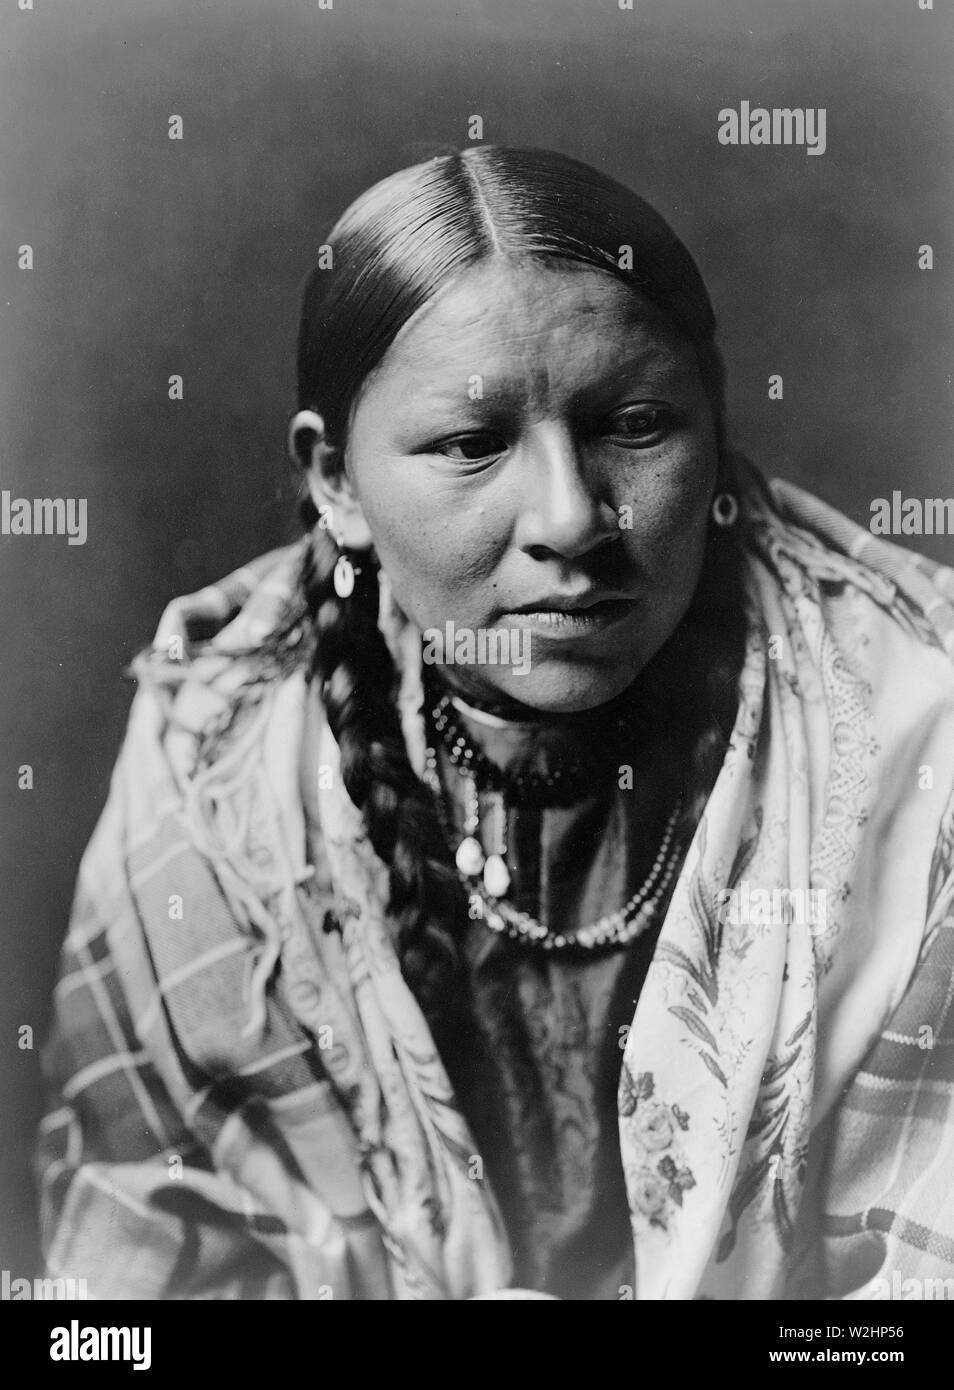 Edward S. Curtis indiens des États-Unis - Portrait d'une jeune femme indienne Cheyenne ca. 1910 Banque D'Images